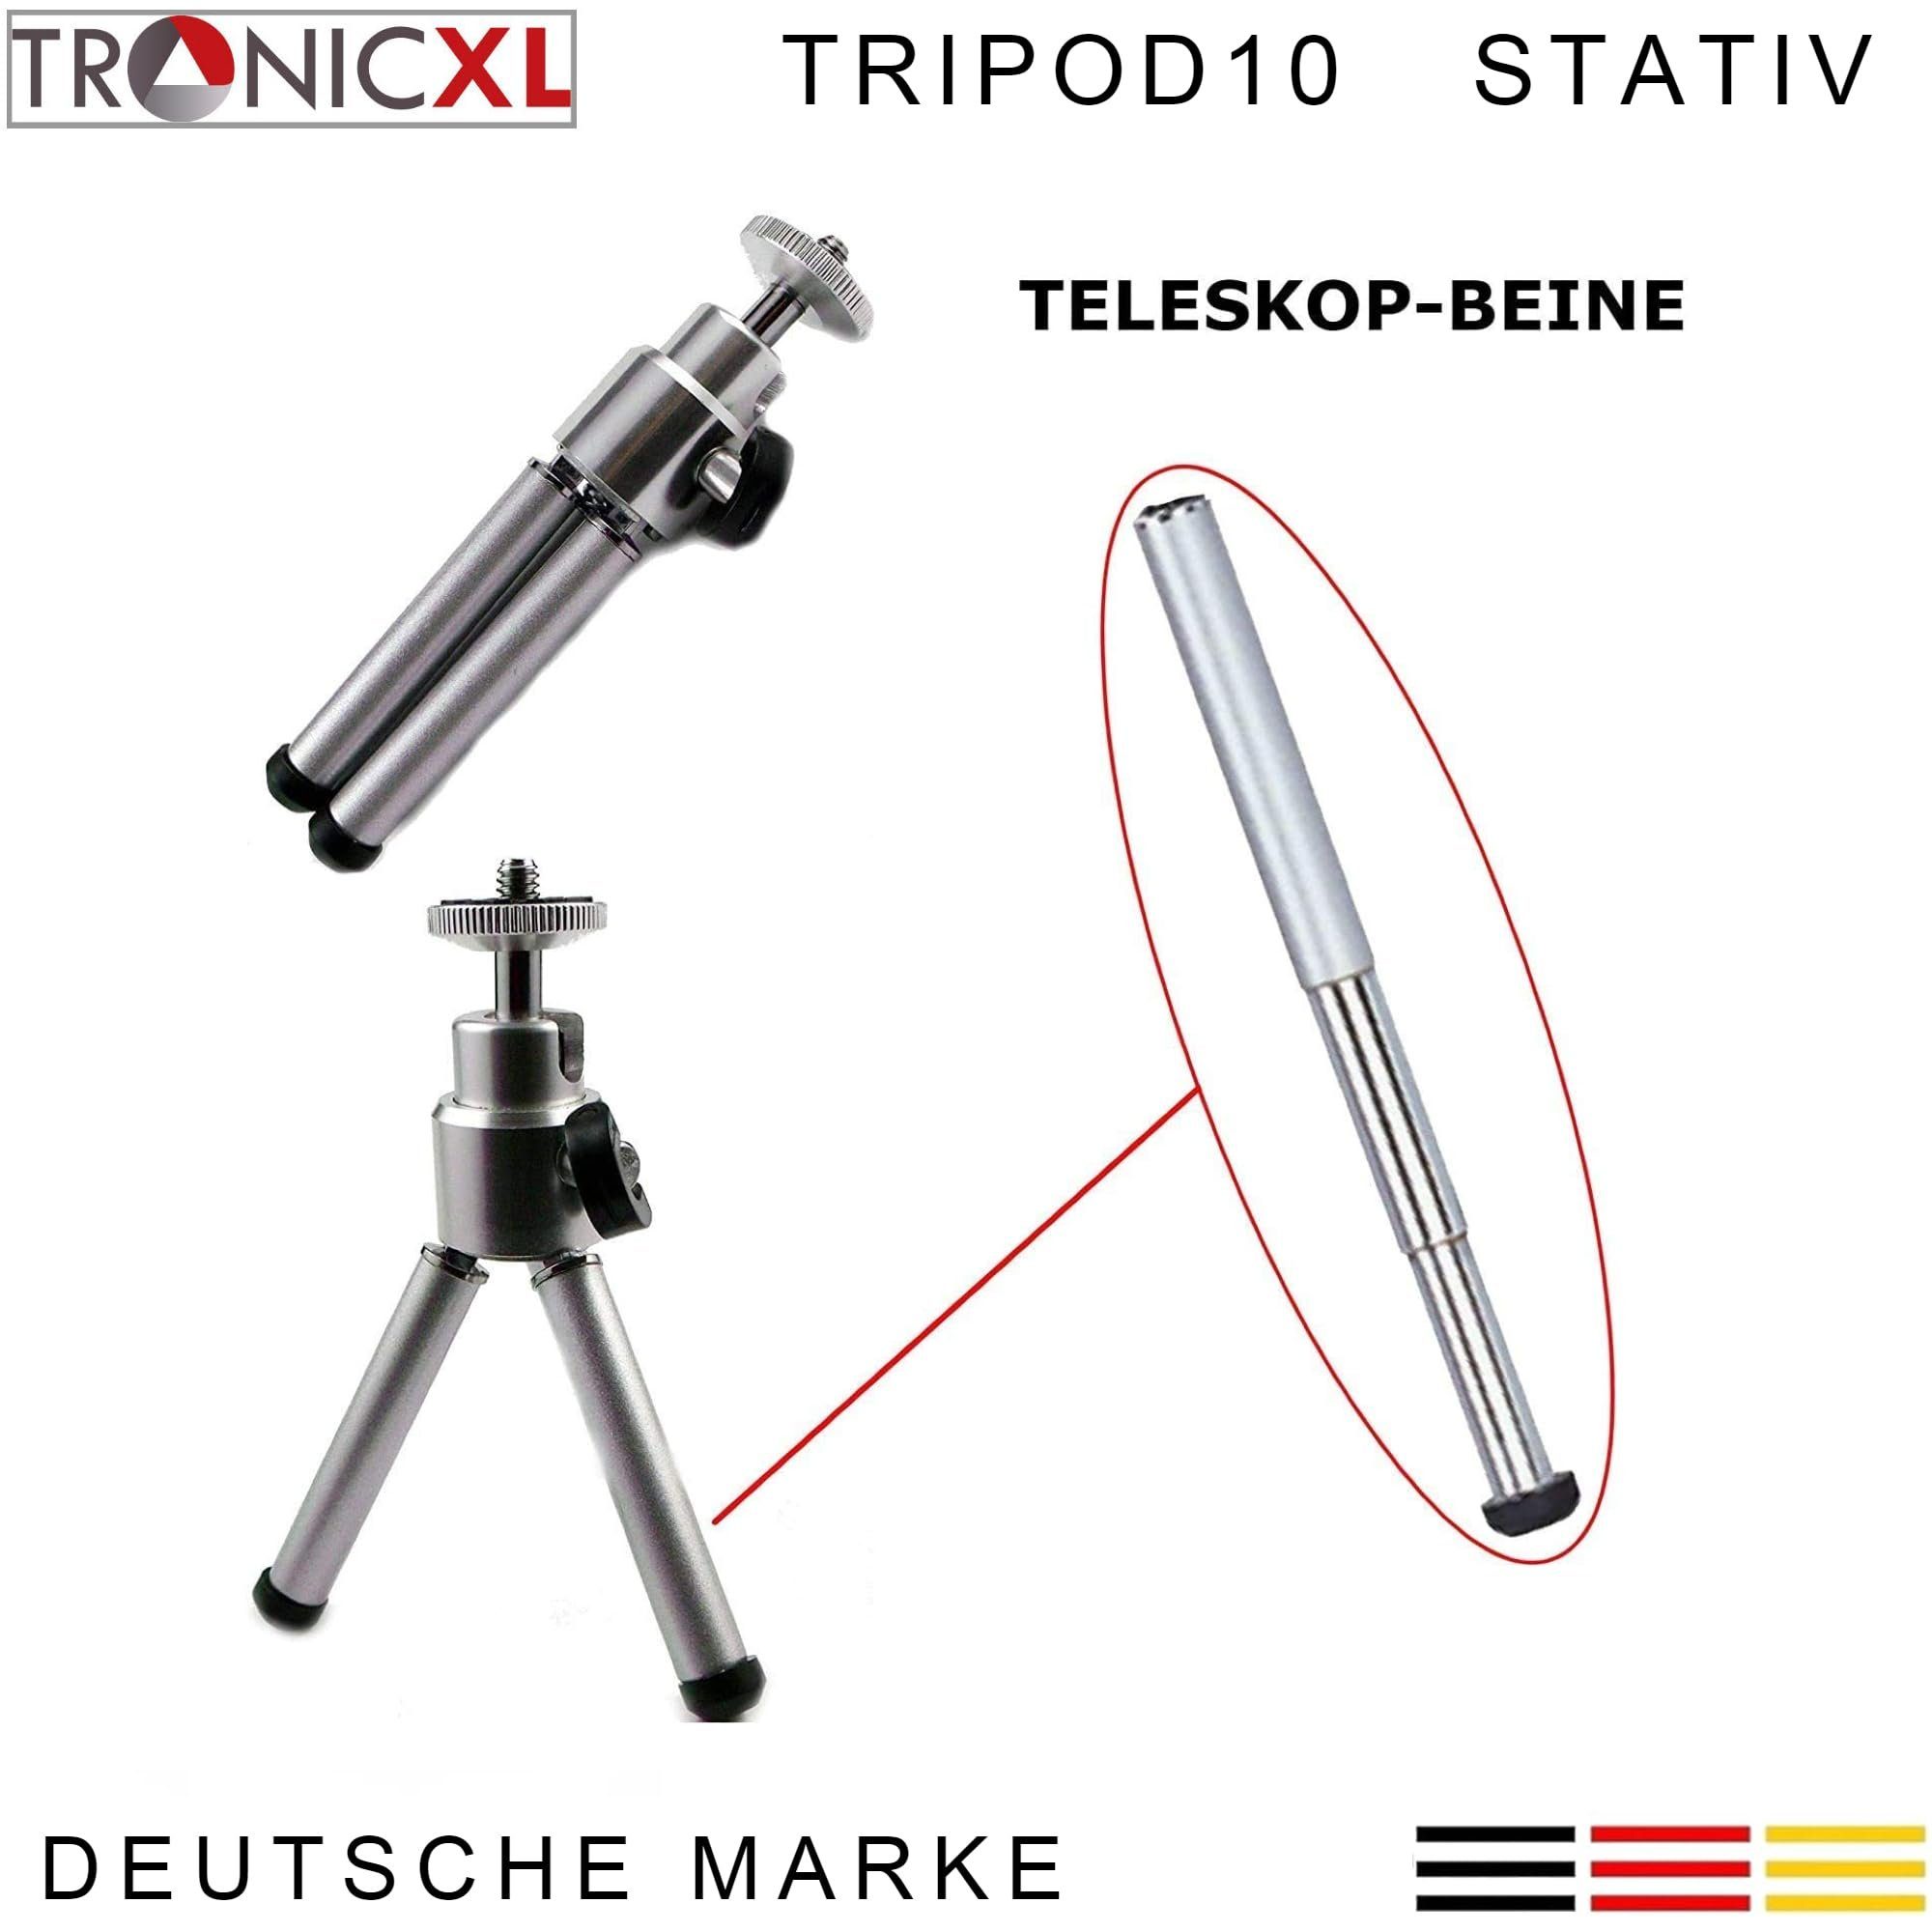 Laser Tacklife Einhell Baustativ Mini Dewalt Stativhalterung für Tripod Bosch Stativ TronicXL